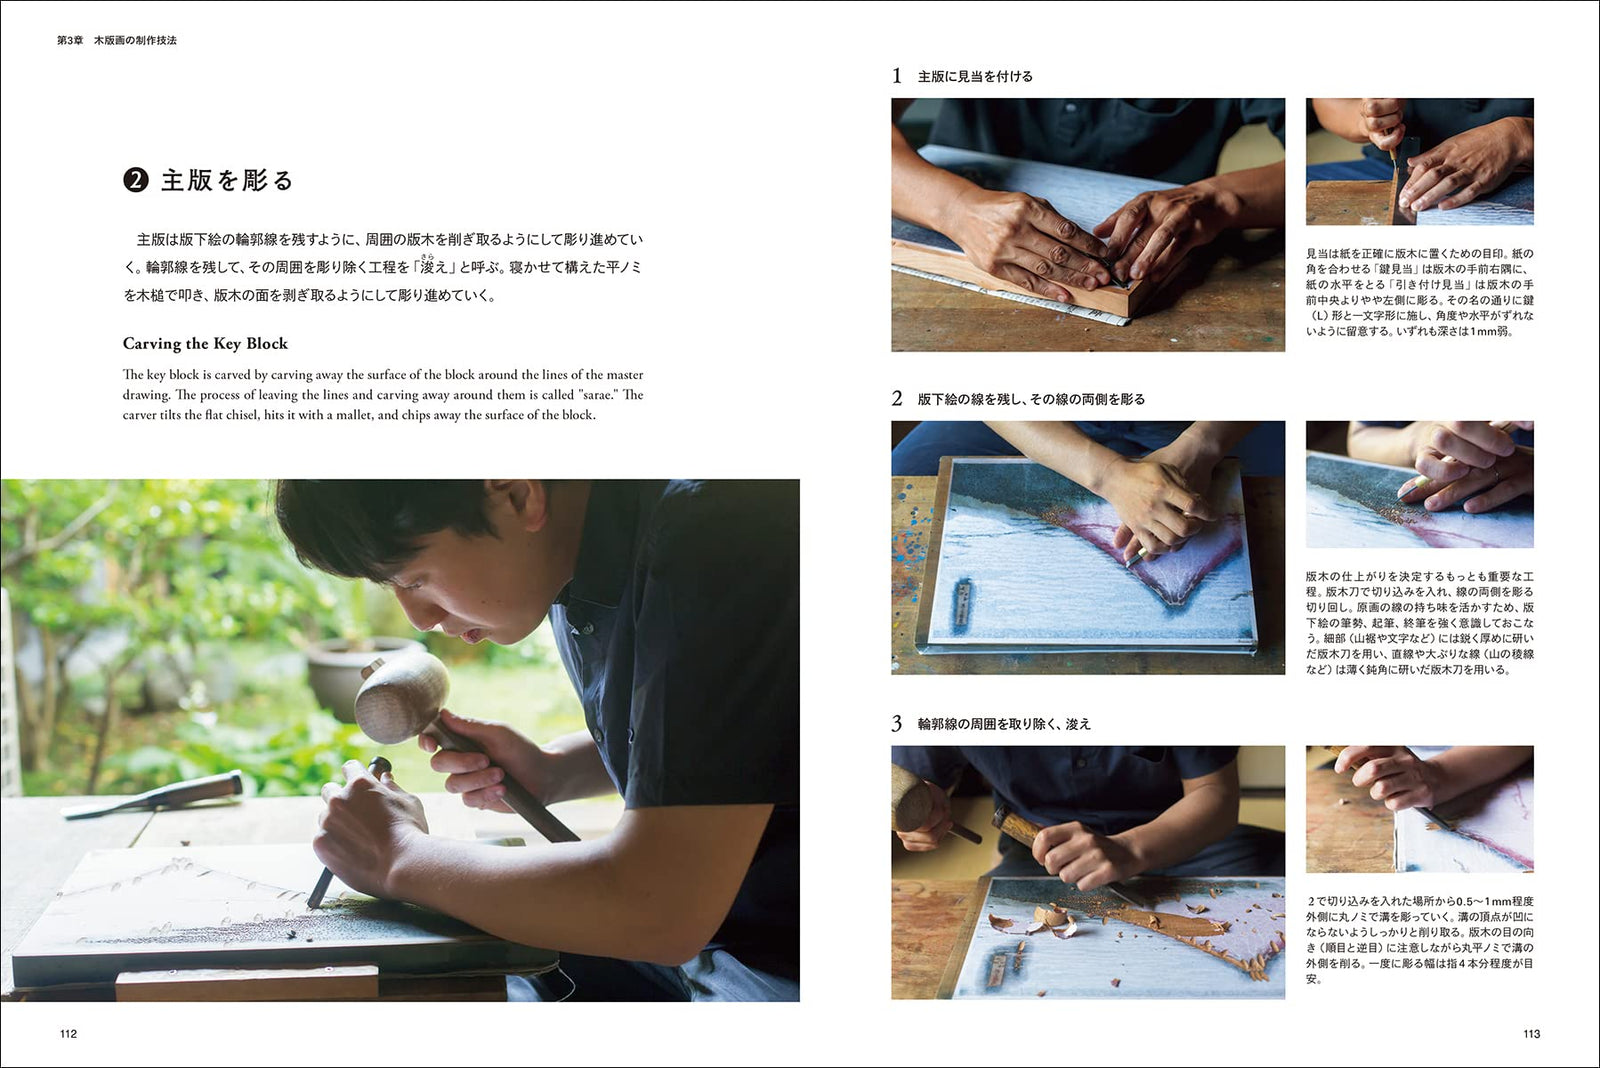 木版画 伝統技法とその意匠: 絵師・彫師・摺師 三者協業による出版文化の歴史 – YAMASUKE KurashigeTools